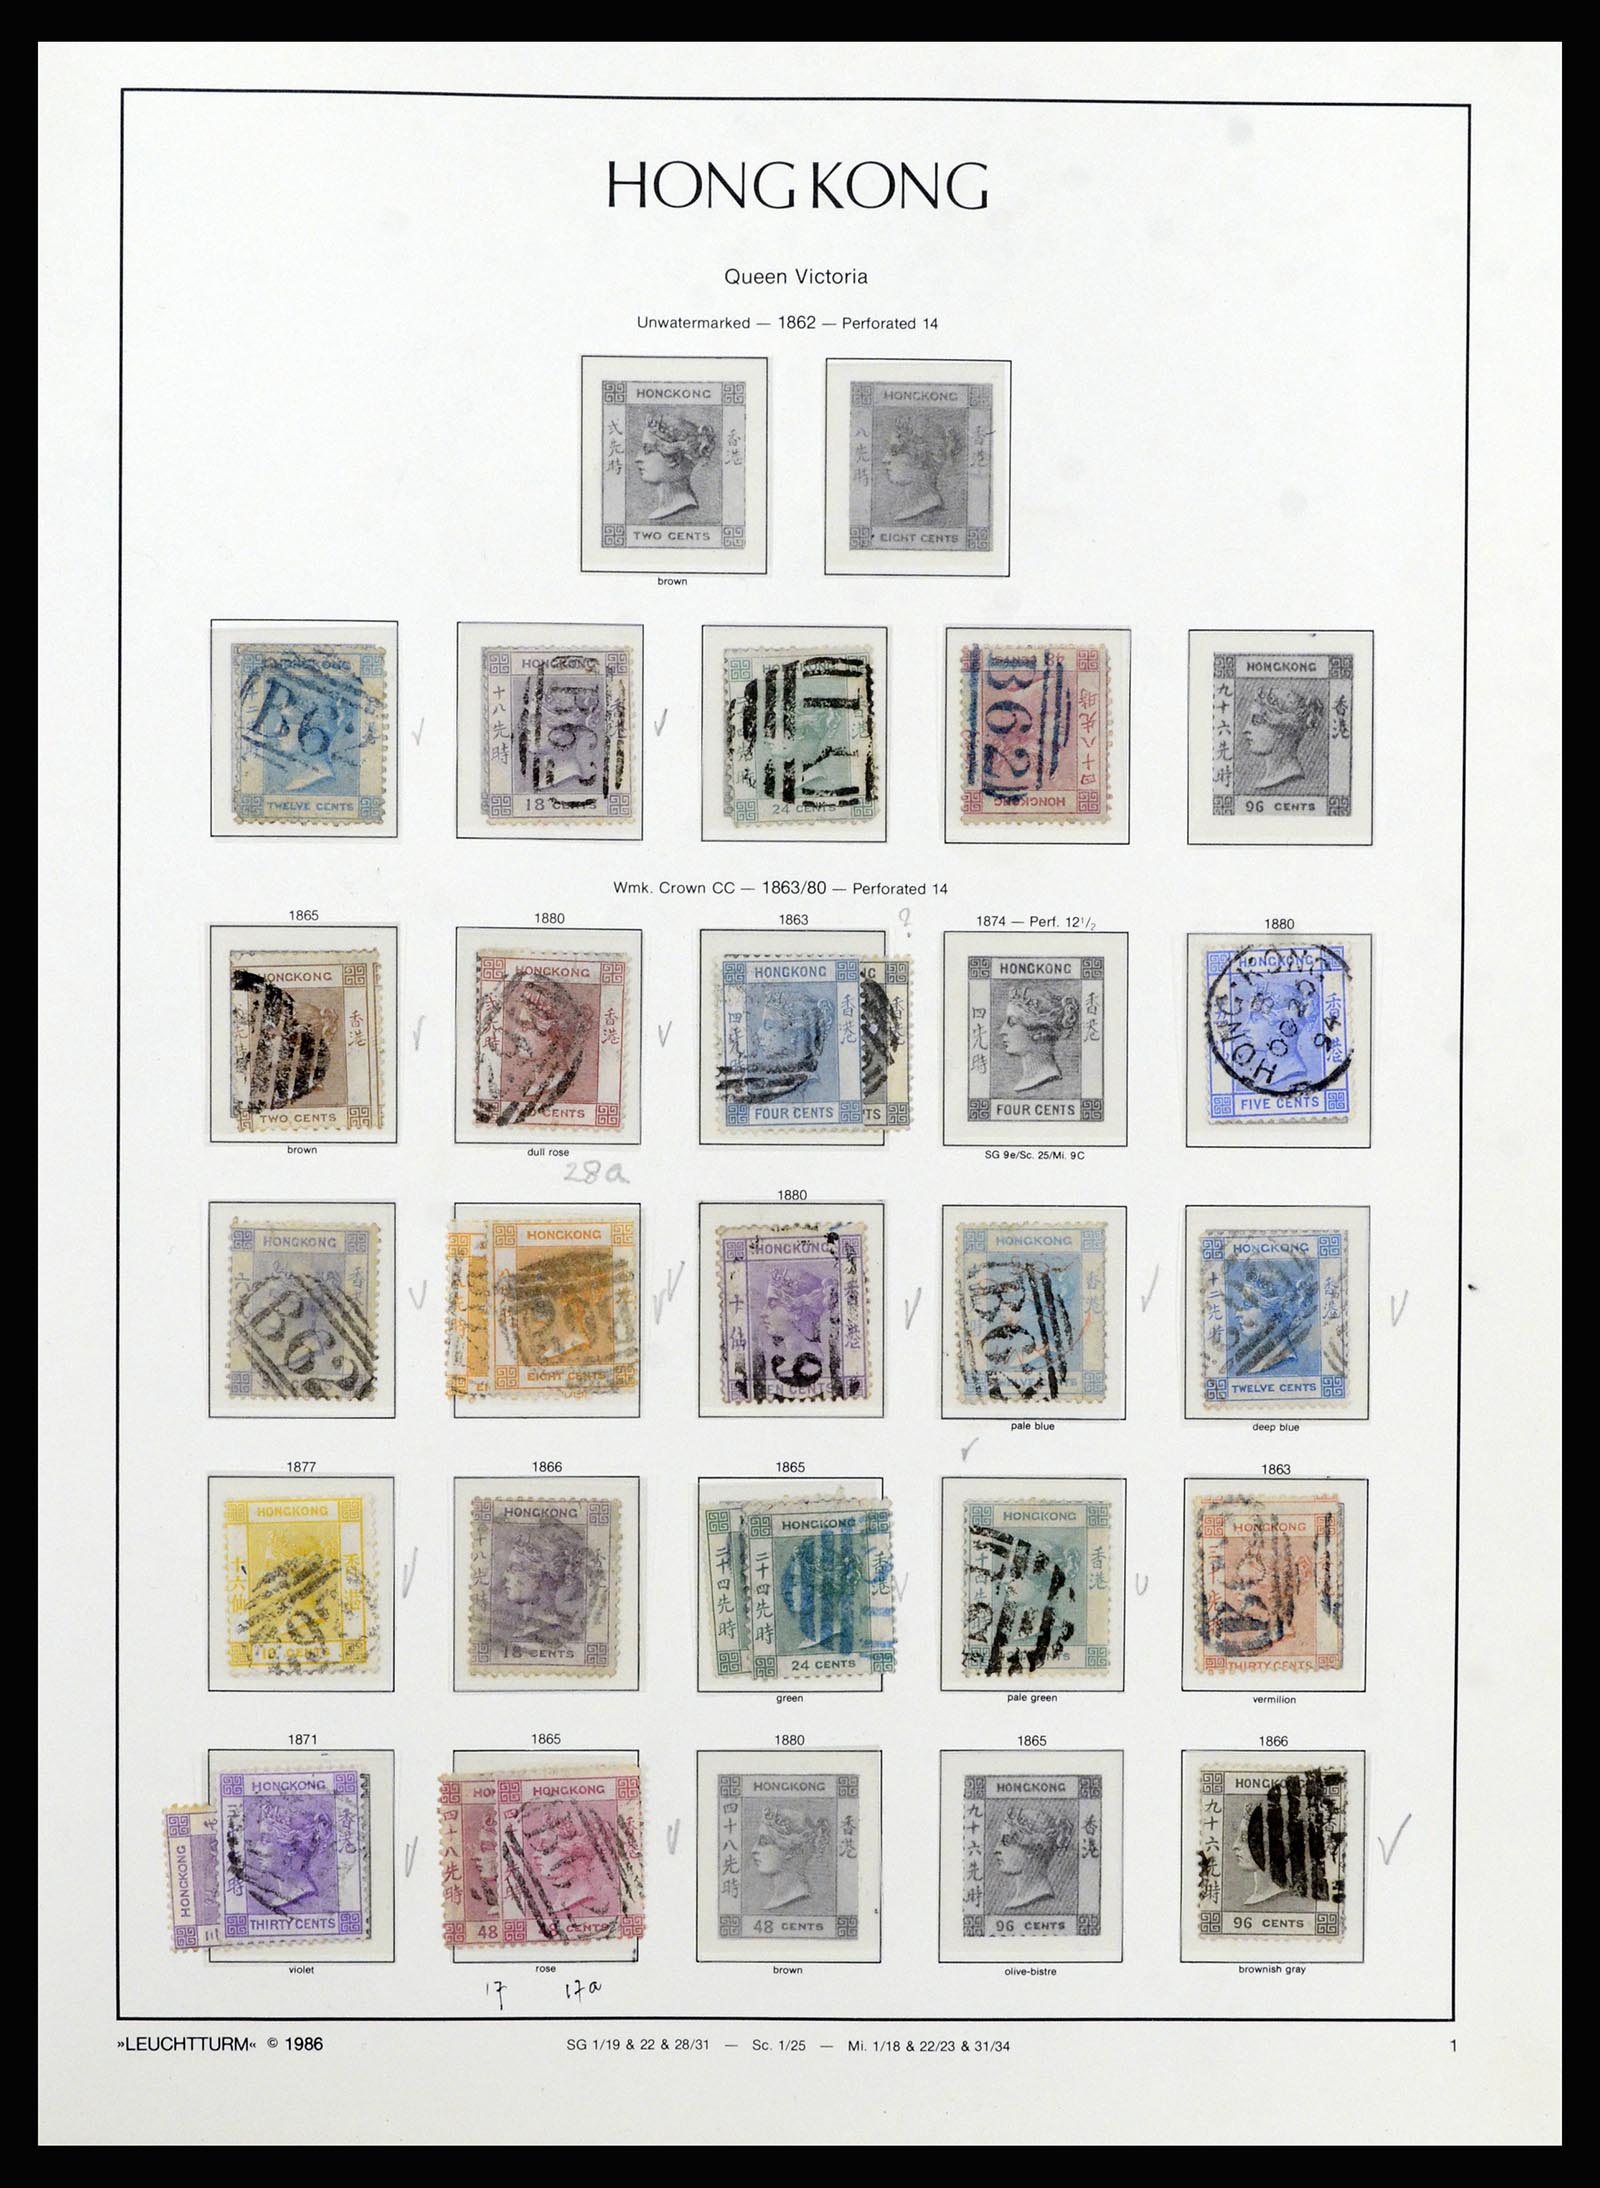 37070 001 - Stamp collection 37070 Hong Kong 1862-1996.